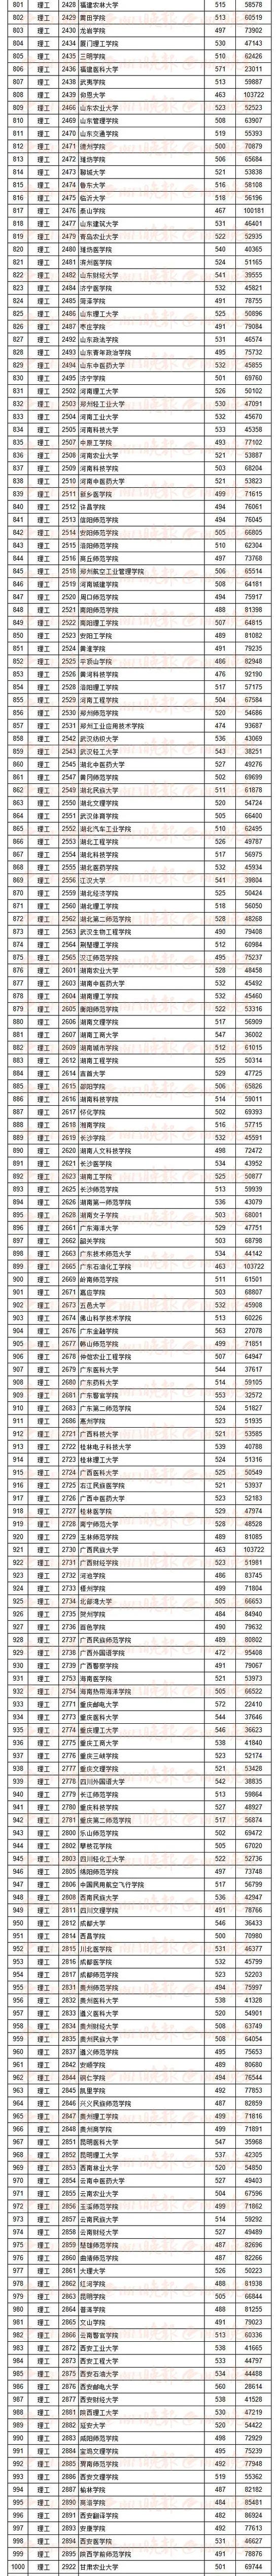 2020江西高考排名表_江西省各市2020前三季度GDP排名情况(全)